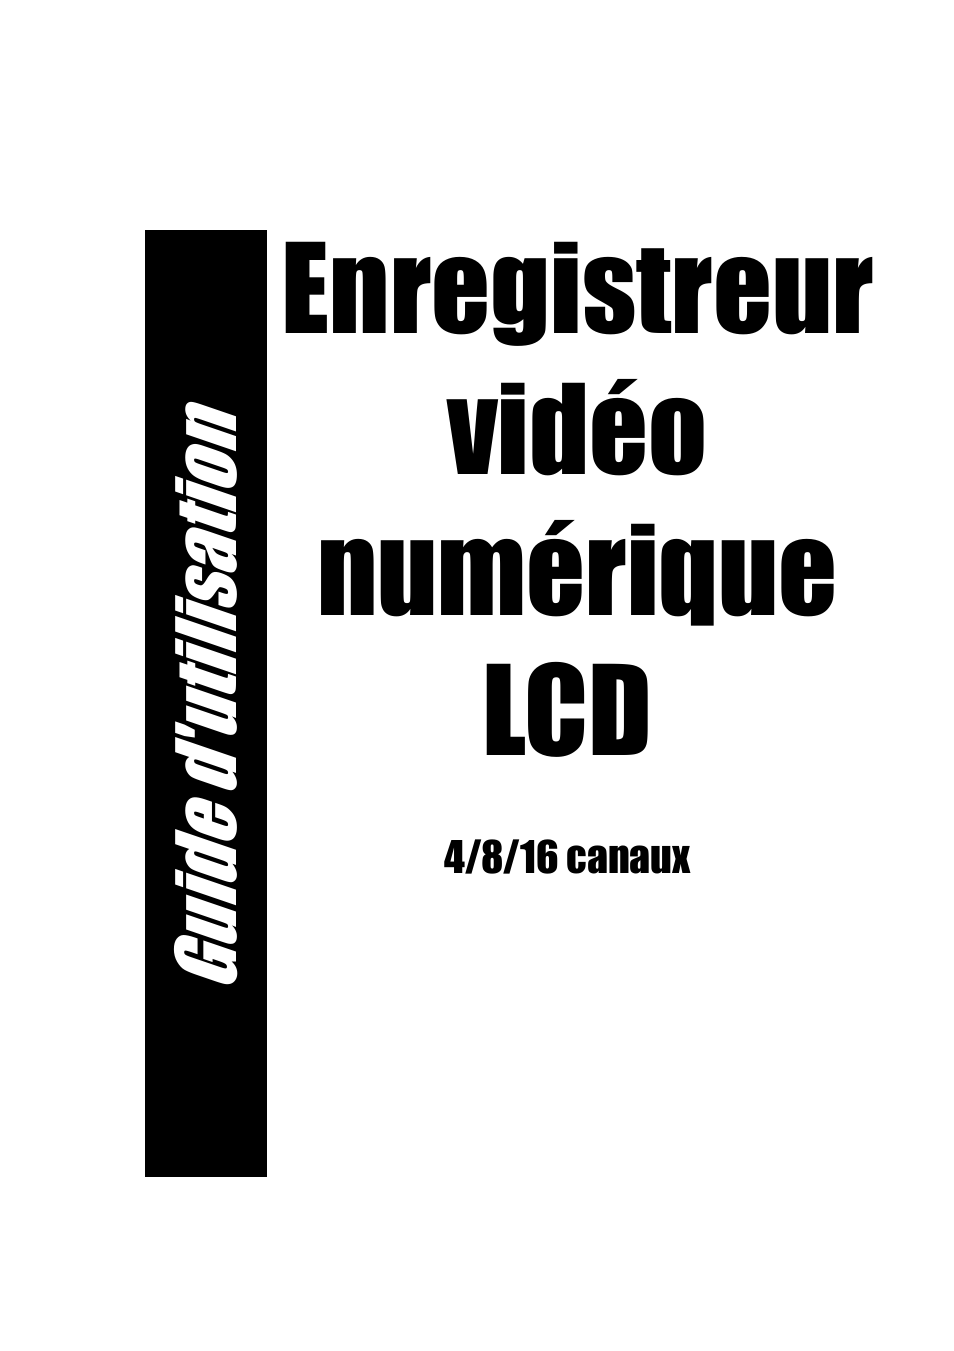 ELRO DVR151S Camera security DVR-system USERS MANUAL Manuel d'utilisation | Pages: 87